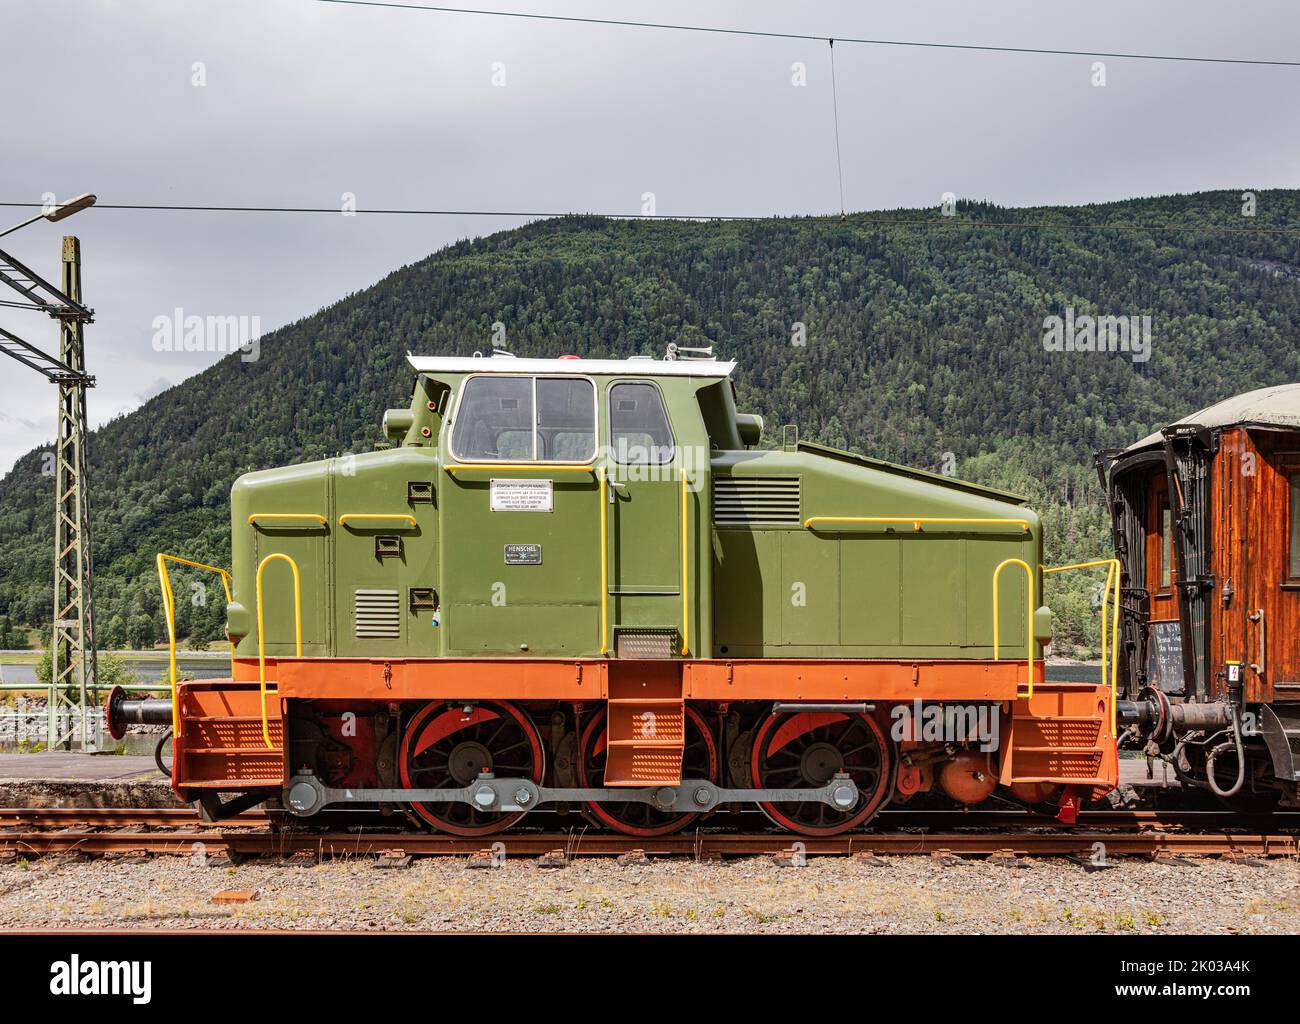 Norway, Vestfold og Telemark, Rjukan, Mæl, station, diesel locomotive, side view Stock Photo